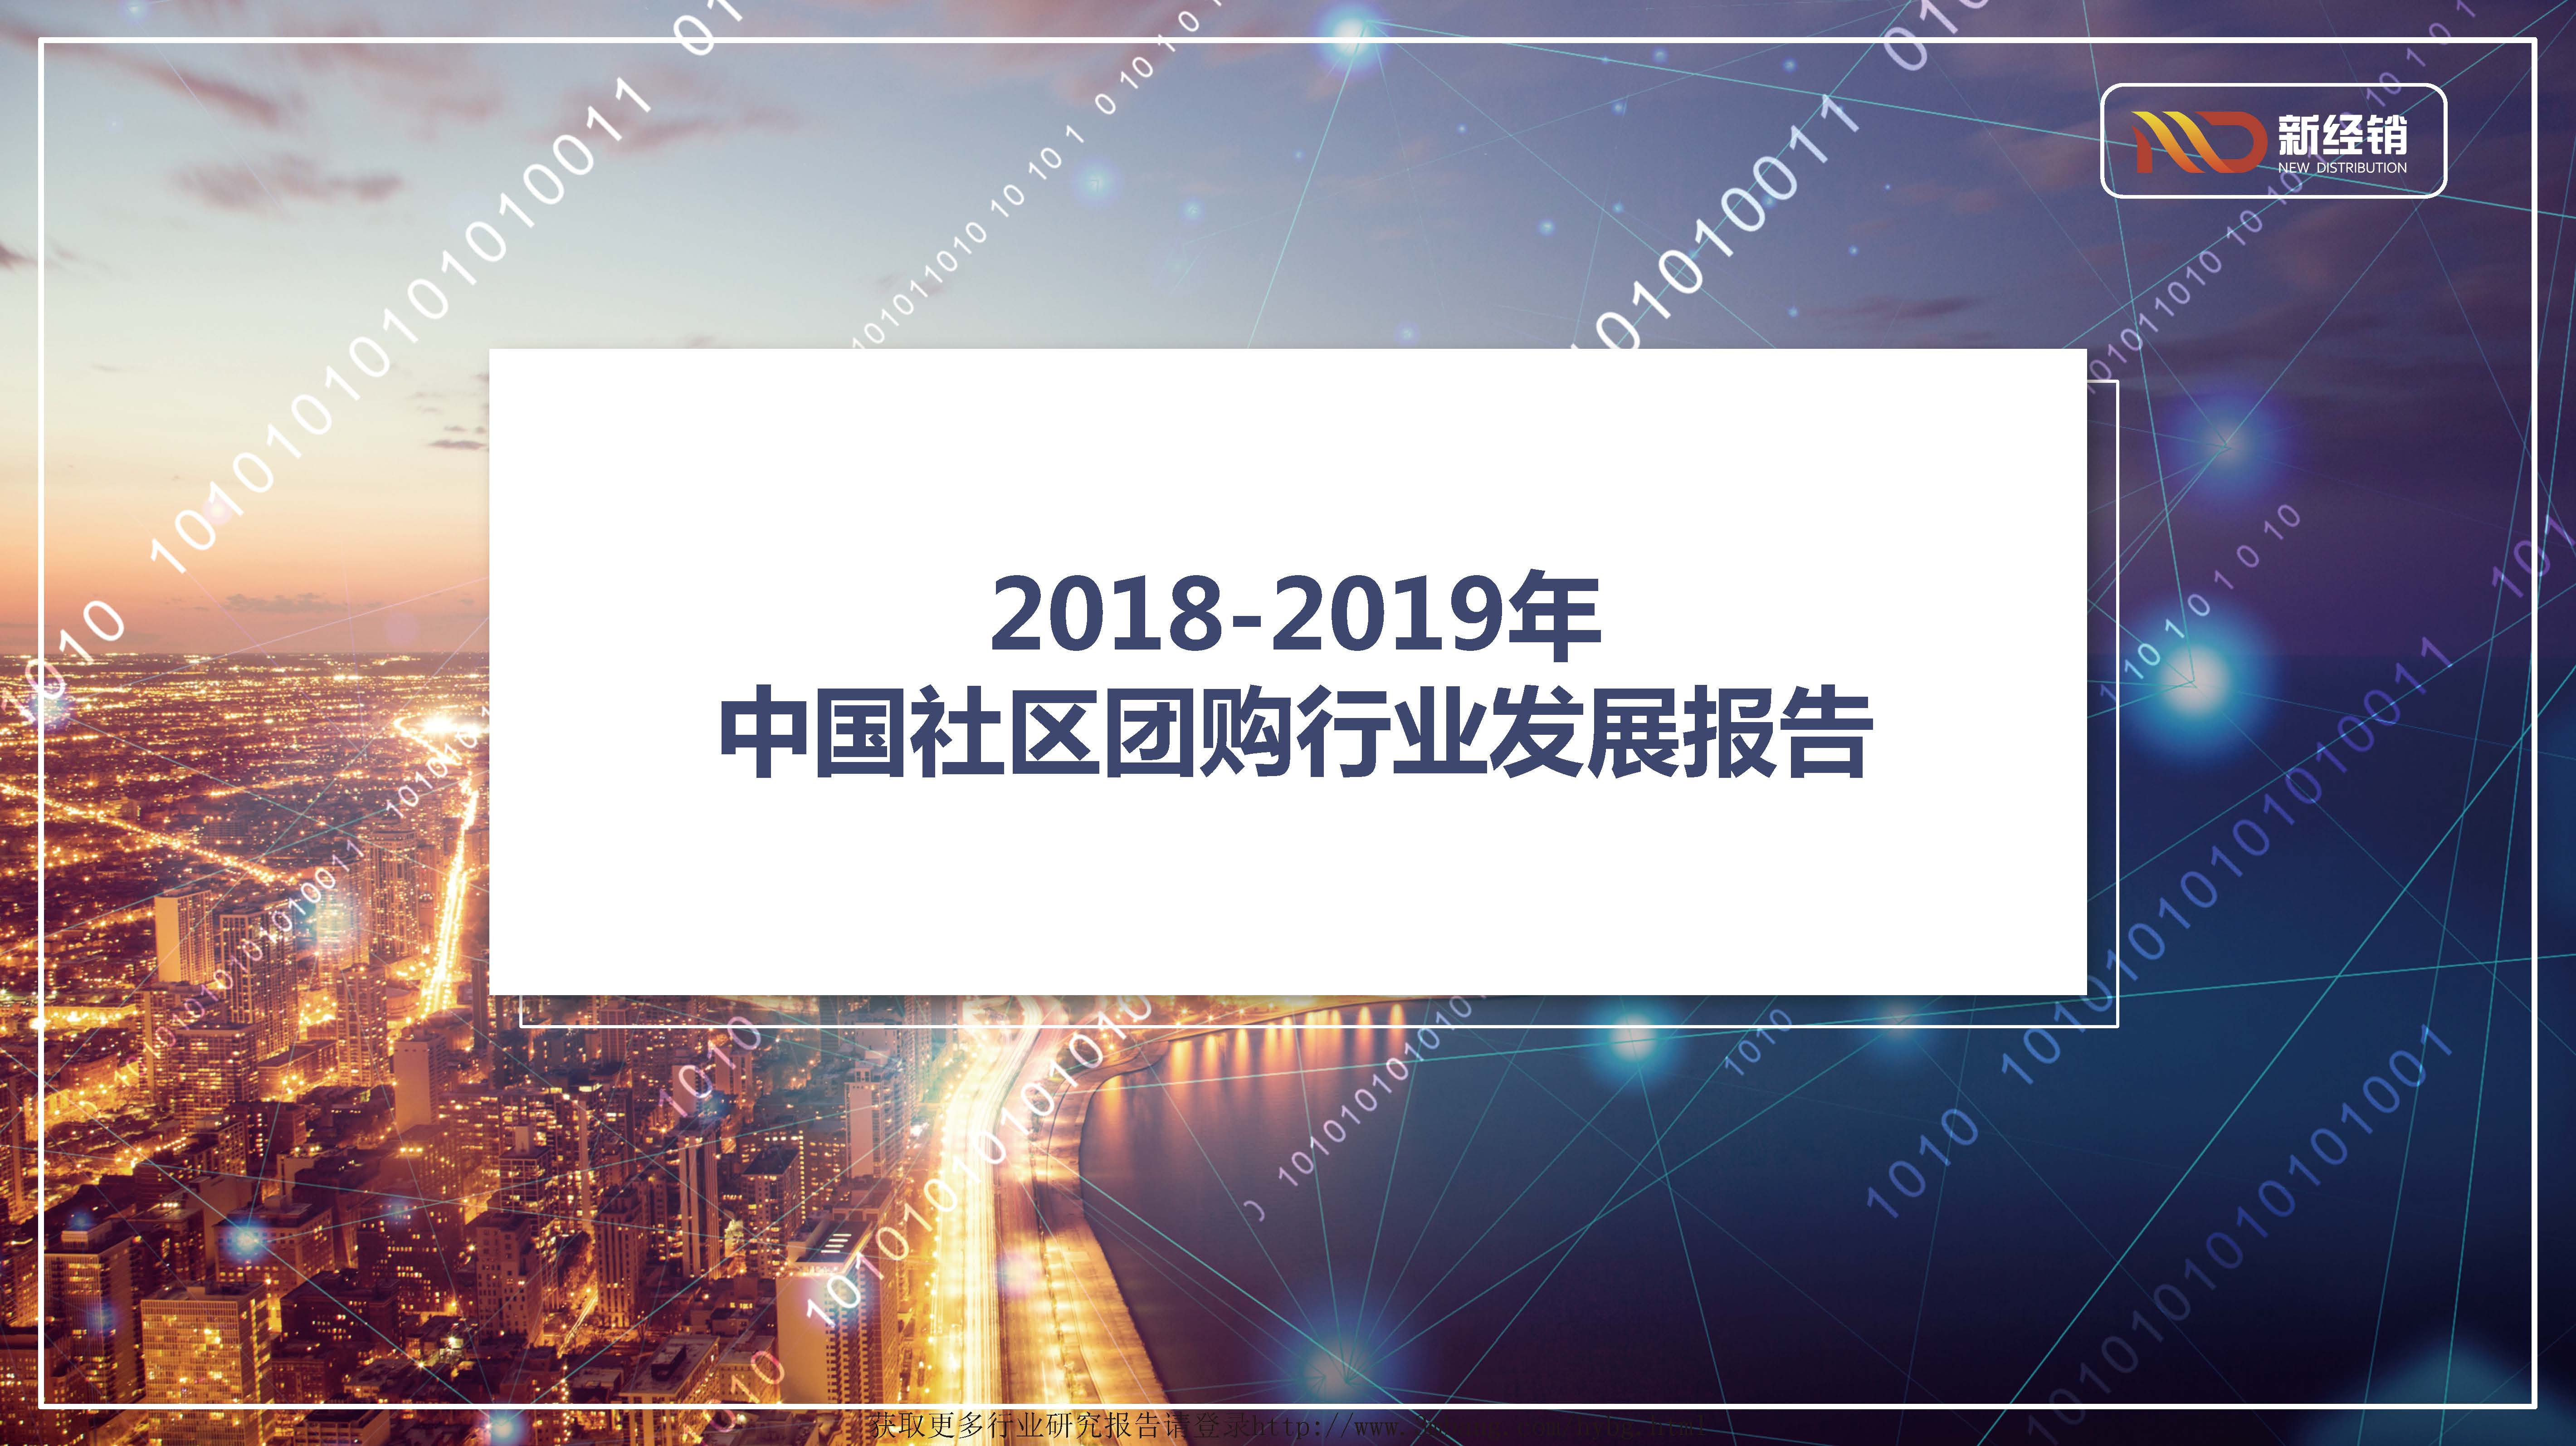 新经销：2018-2019年中国社区团购行业发展报告（附下载地址）